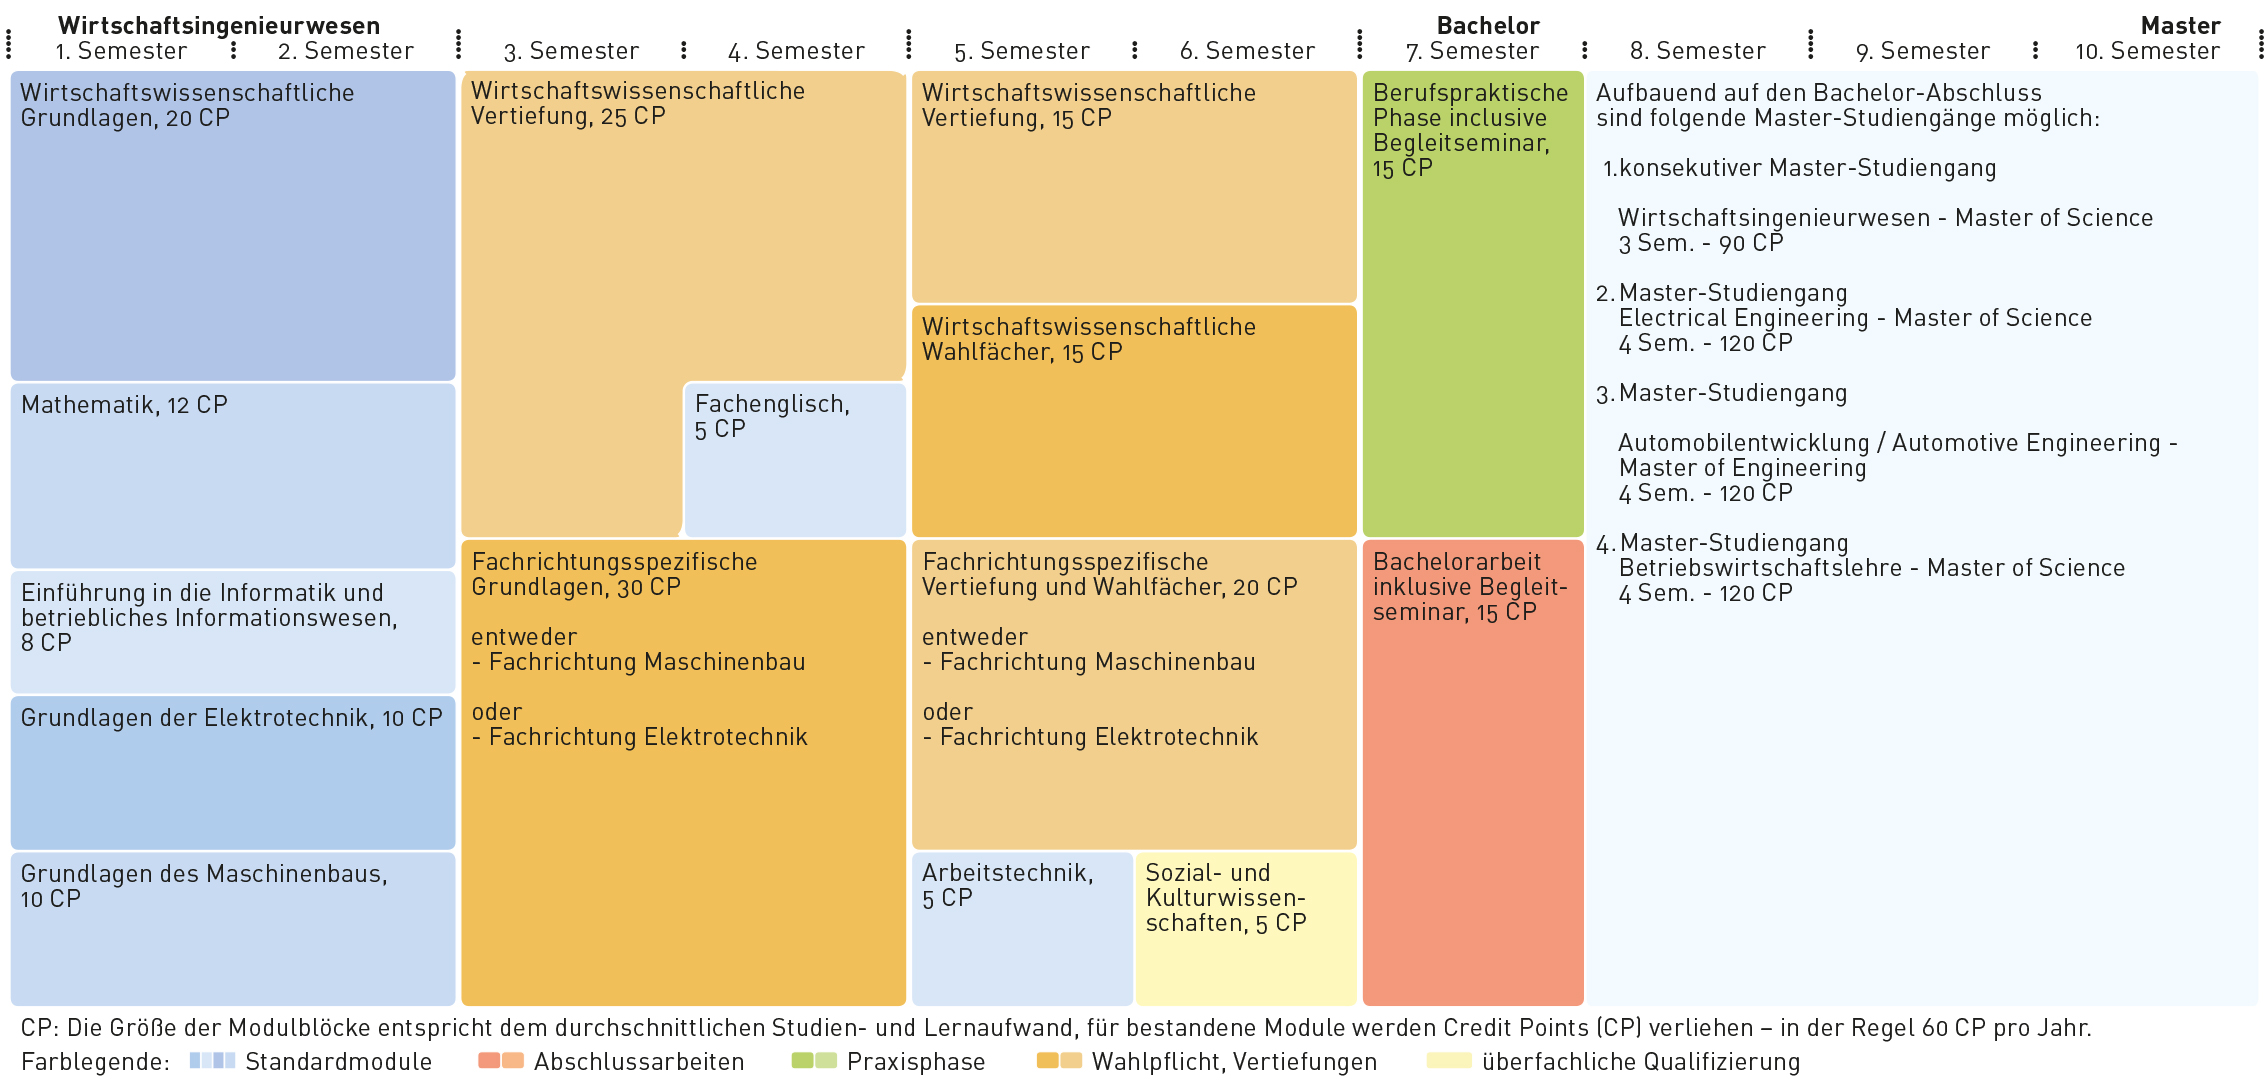 Tabelle Modul_Wirtschaftsingenieurwesen_B.Sc